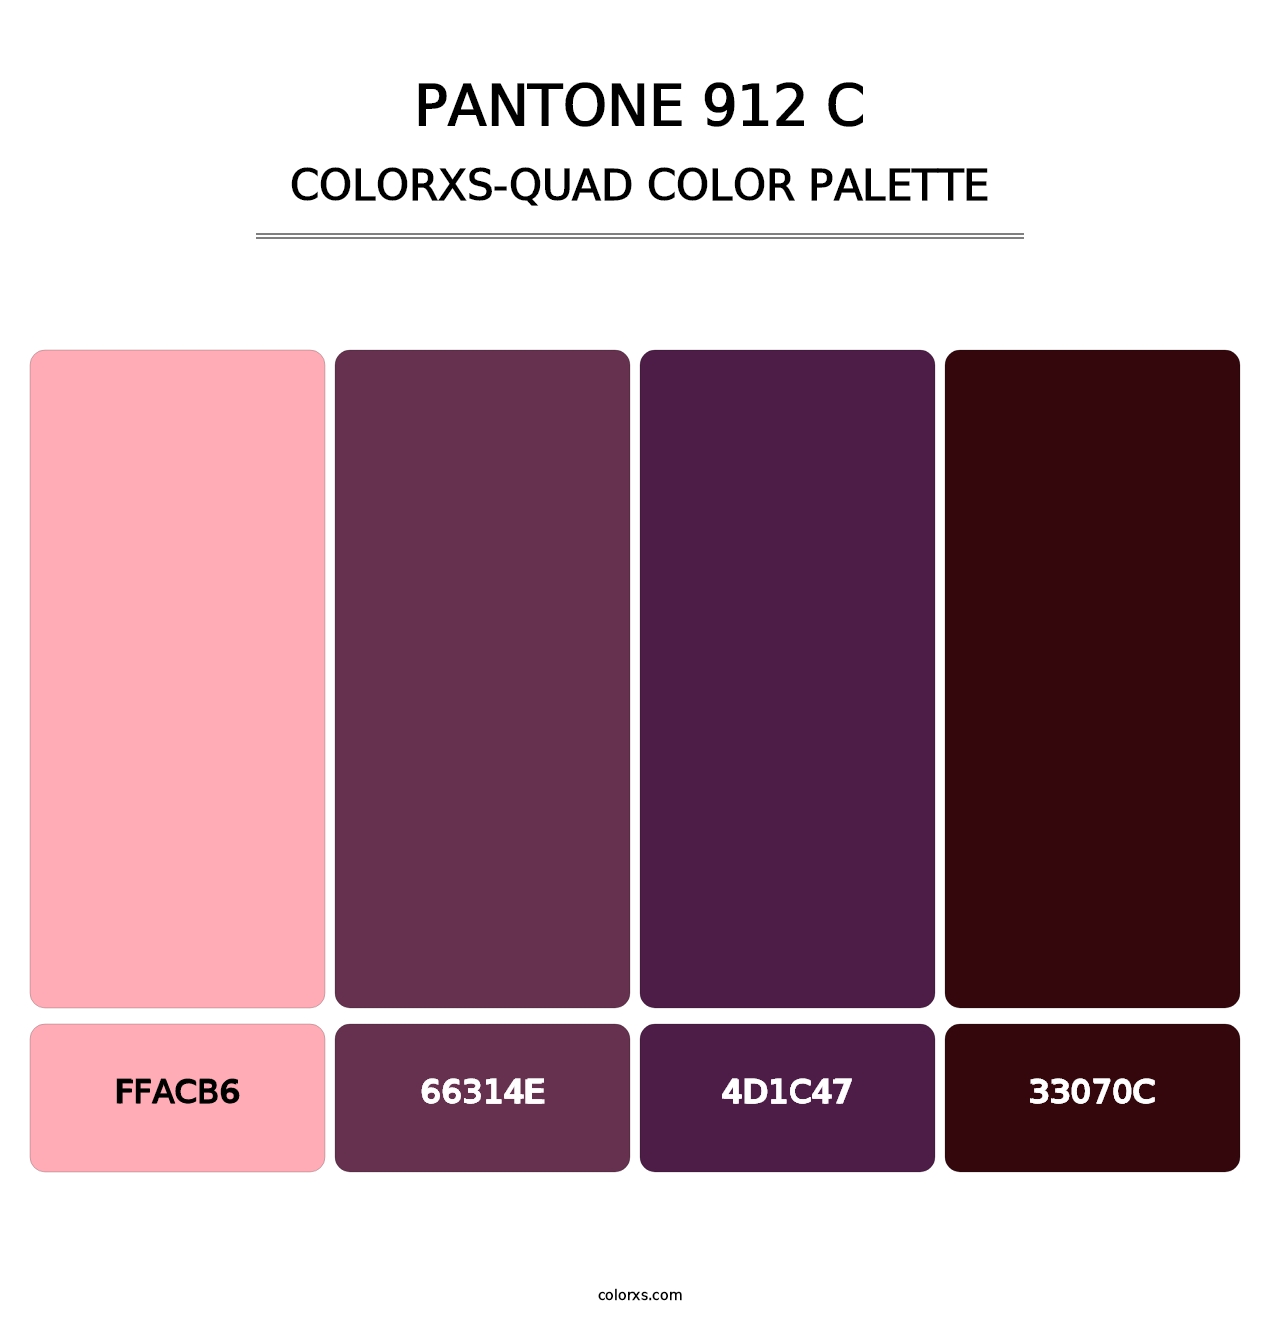 PANTONE 912 C - Colorxs Quad Palette